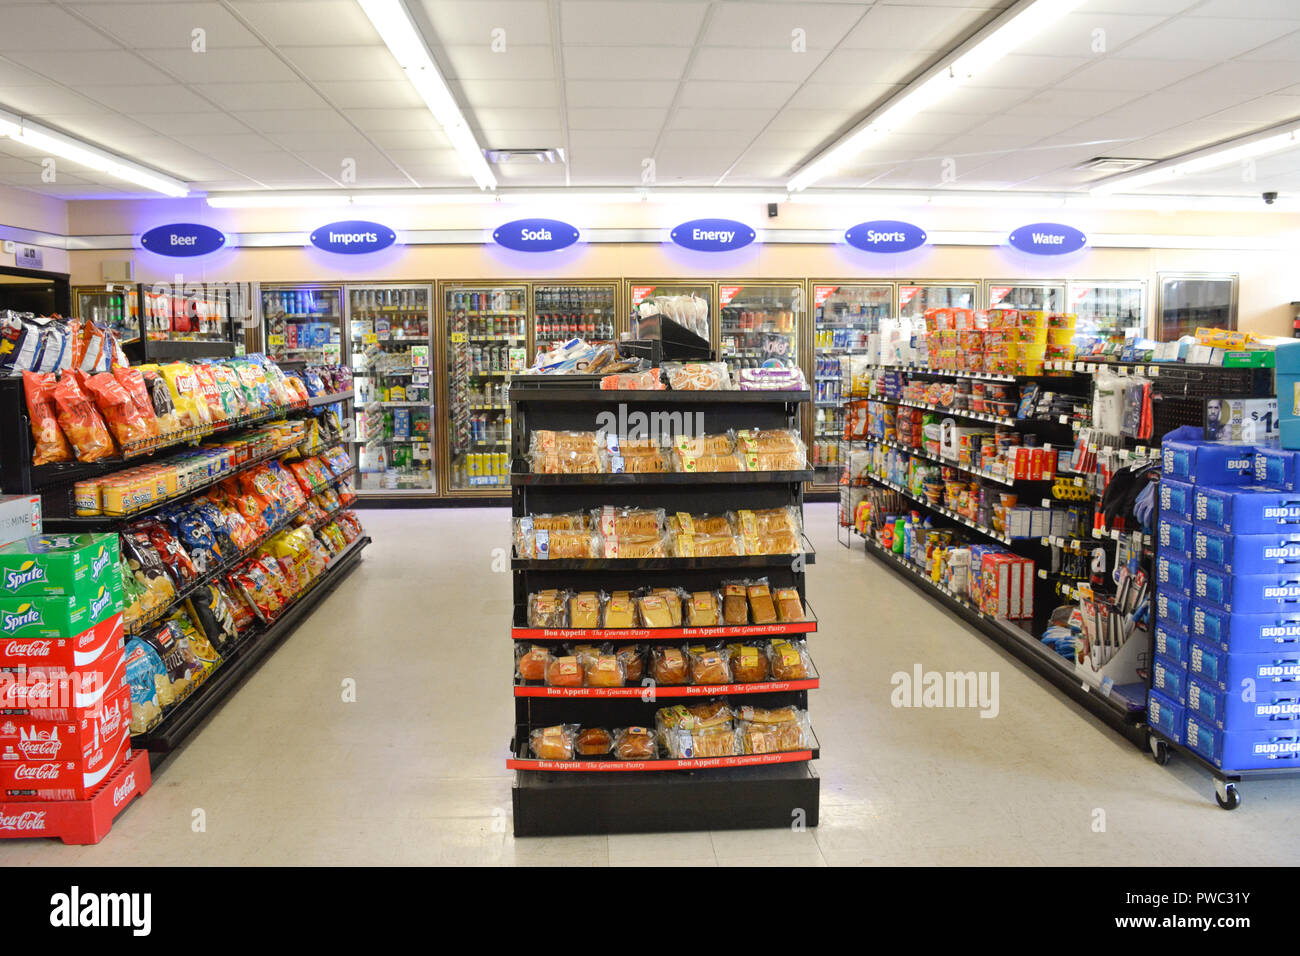 Interno del generico mercato convenienza con navate di snack e i refrigeratori pieno di bevande in Apalachicola, FL, Stati Uniti d'America Foto Stock